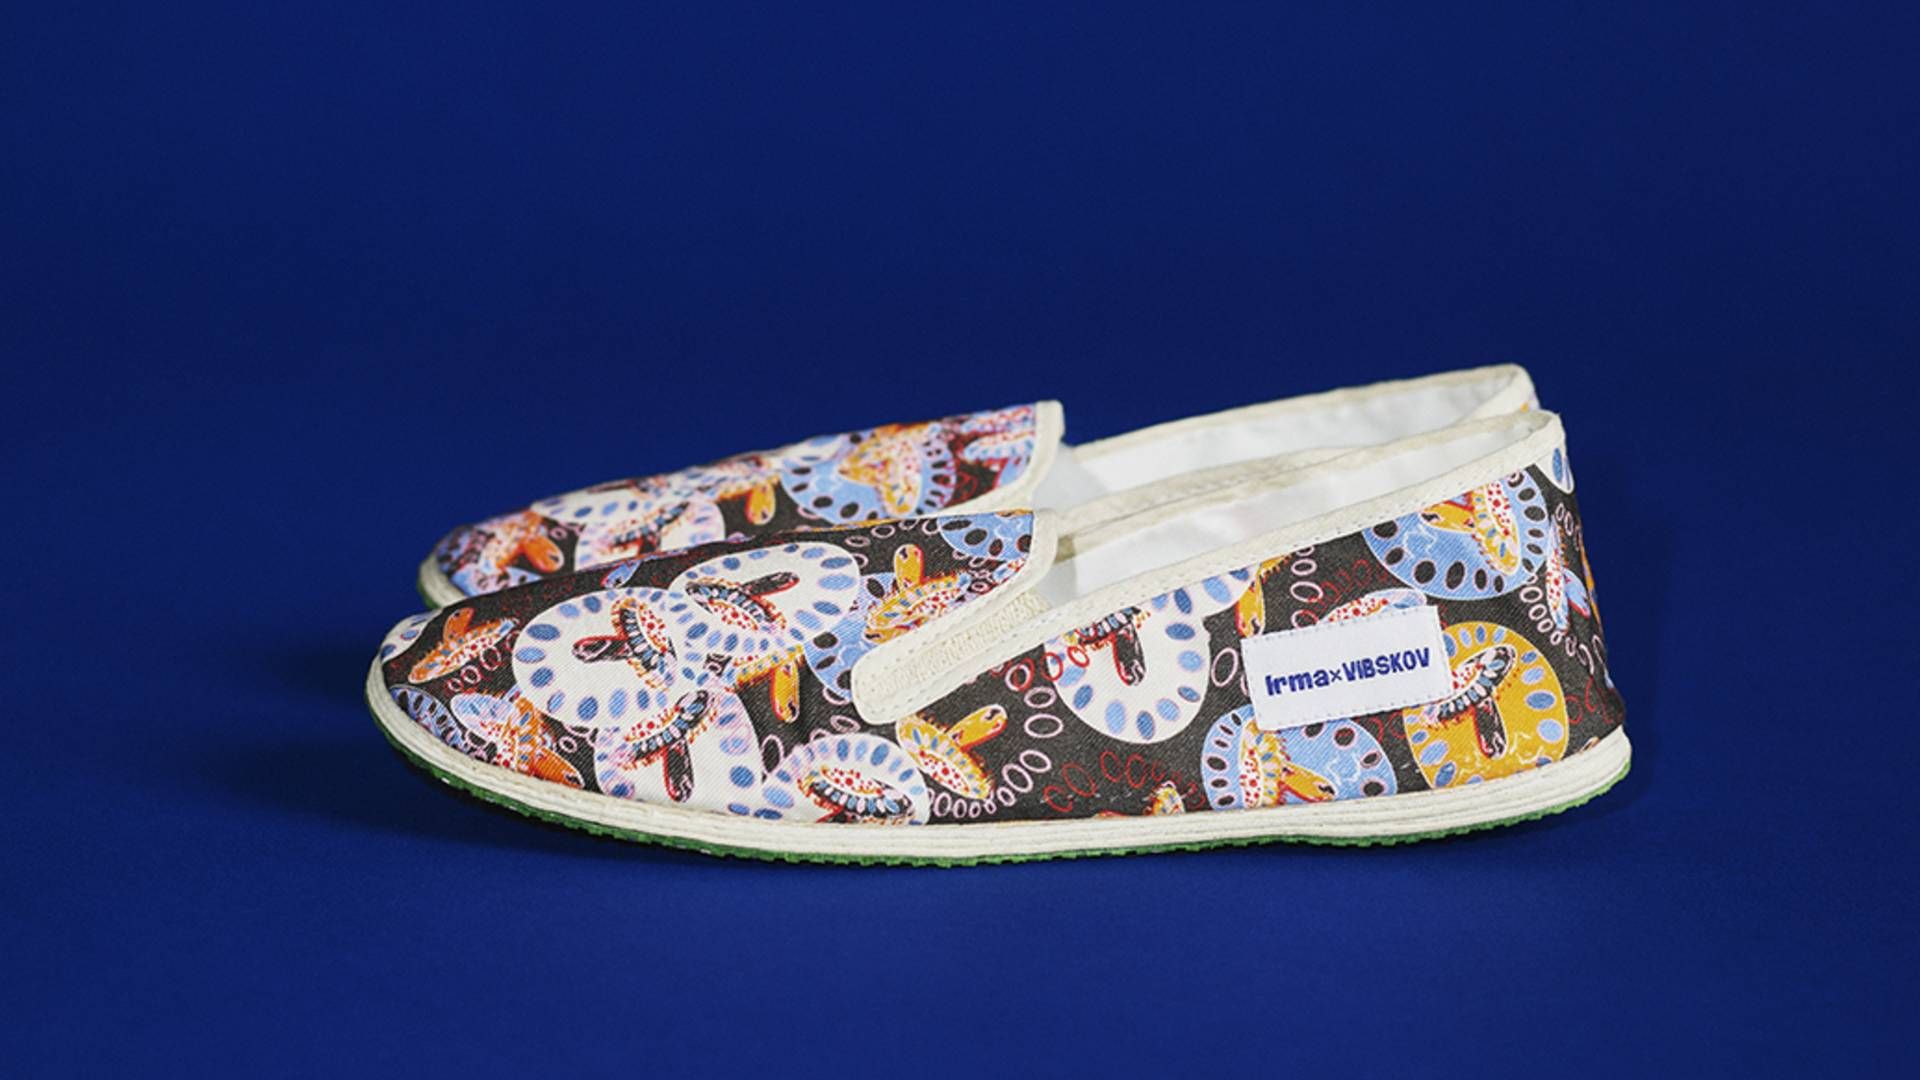 Irmas klassiske Kina-sko, som kæden har solgt siden 1971, får nyt design af Henrik Vibskov | Foto: PR/Irma